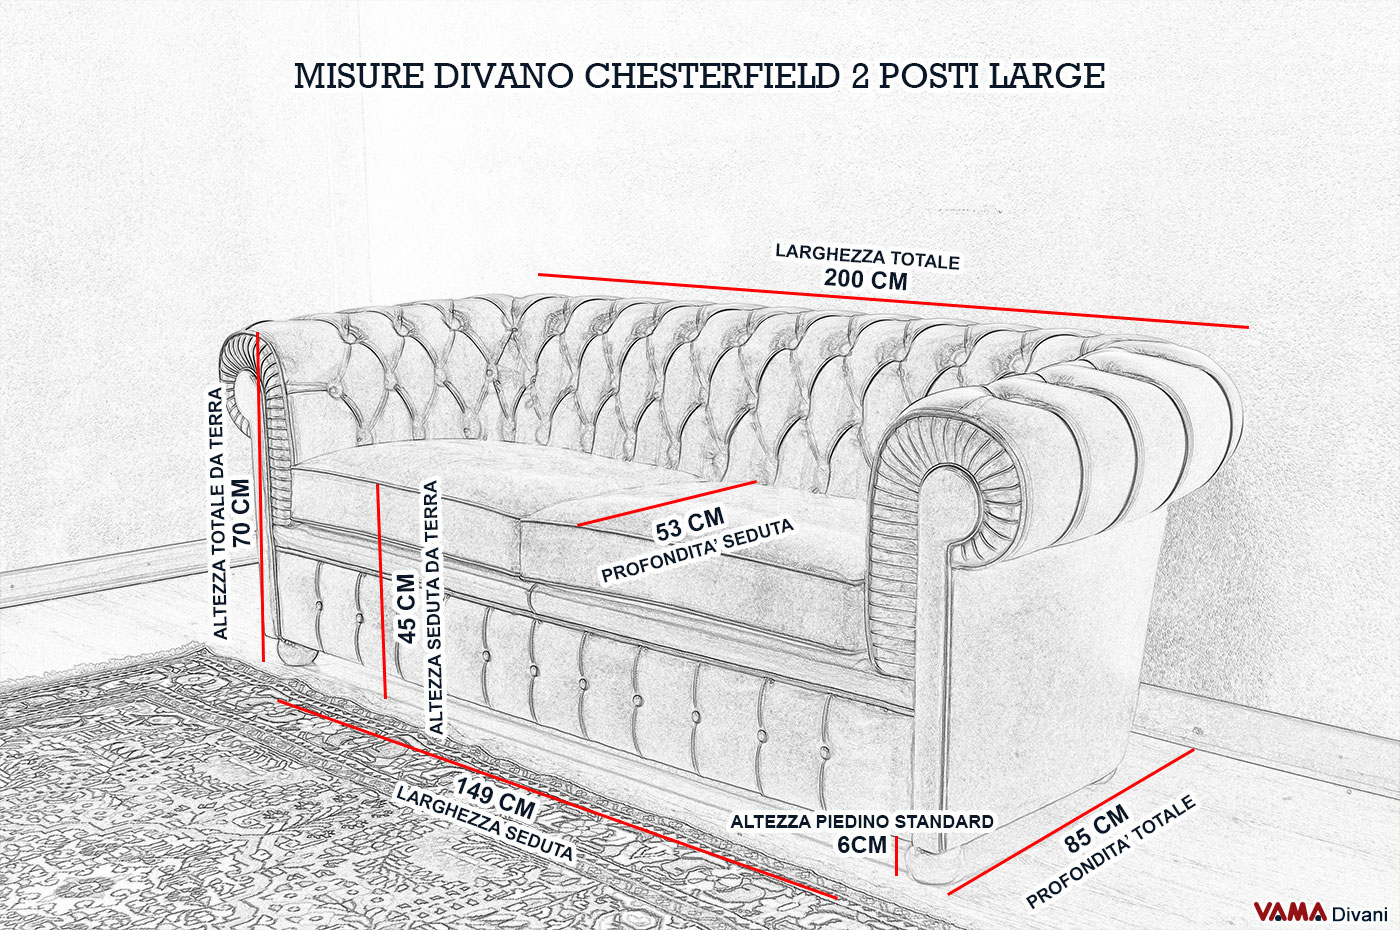 Divano chesterfield 2 posti maxi due cuscini large for Divano dimensioni